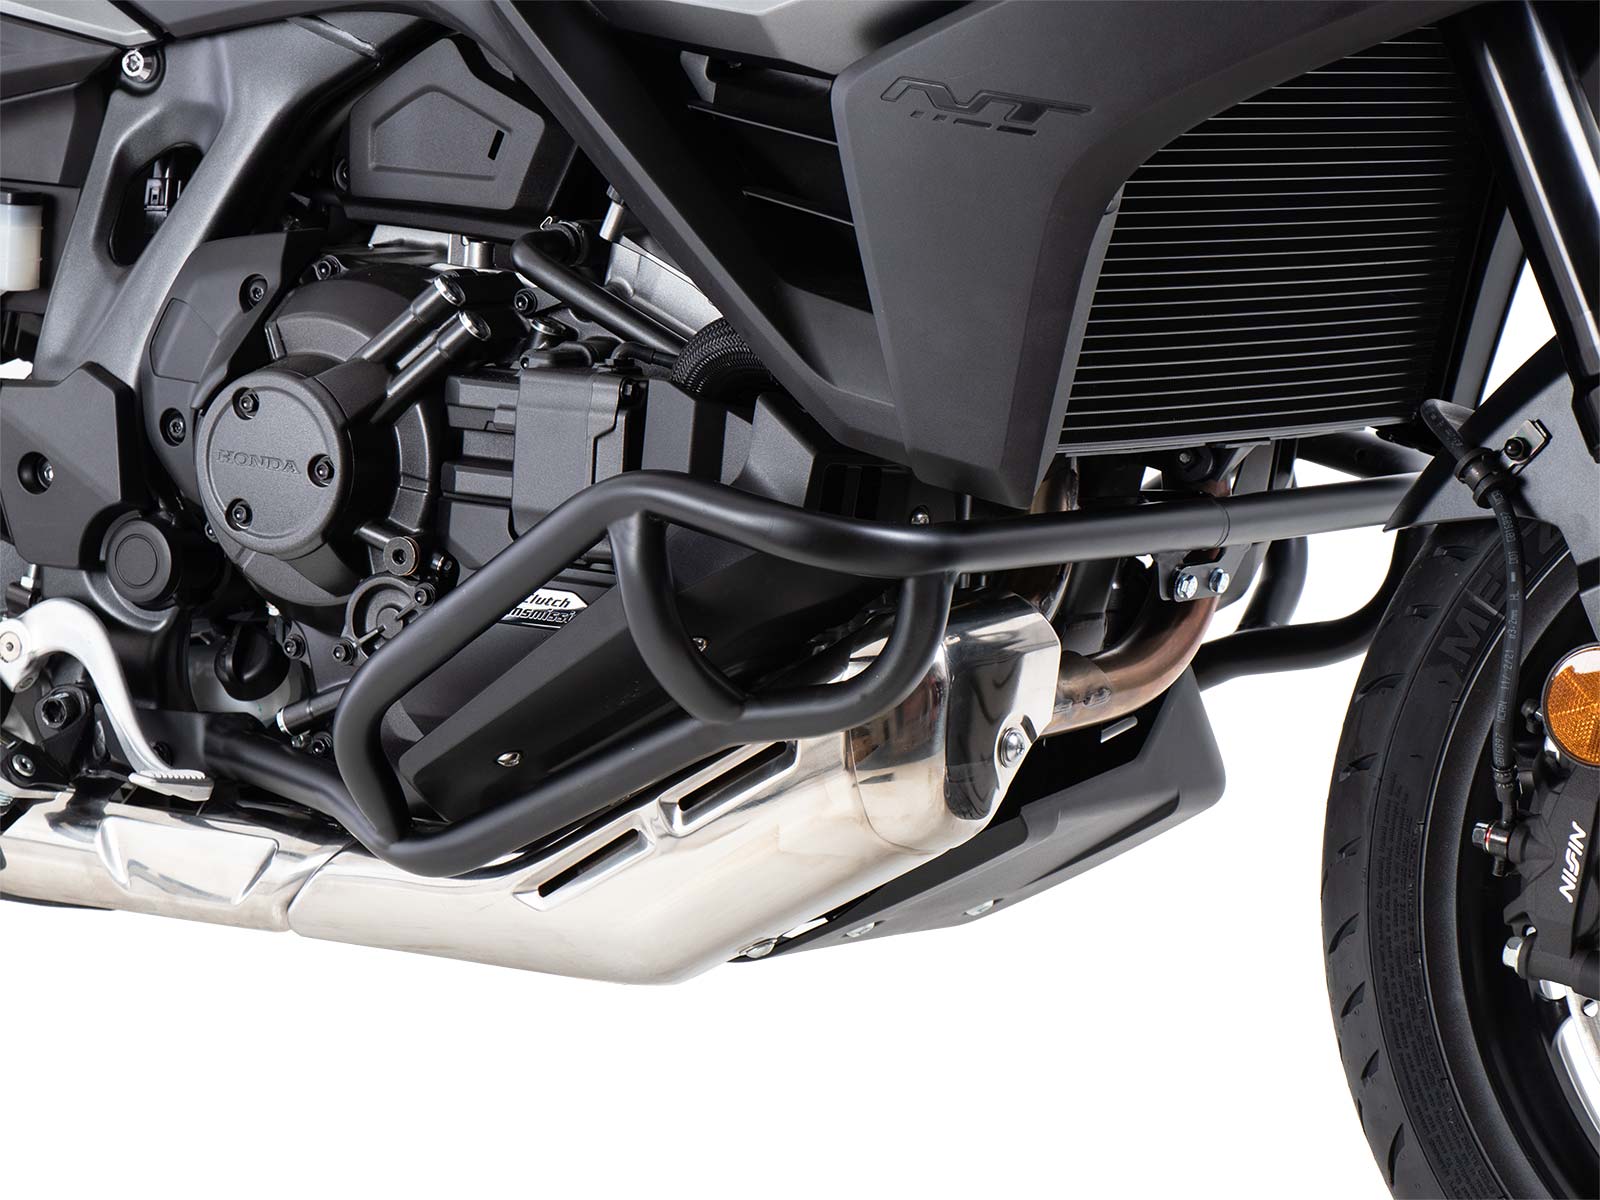 Hepco & Becker Honda Motorcycle Accessories